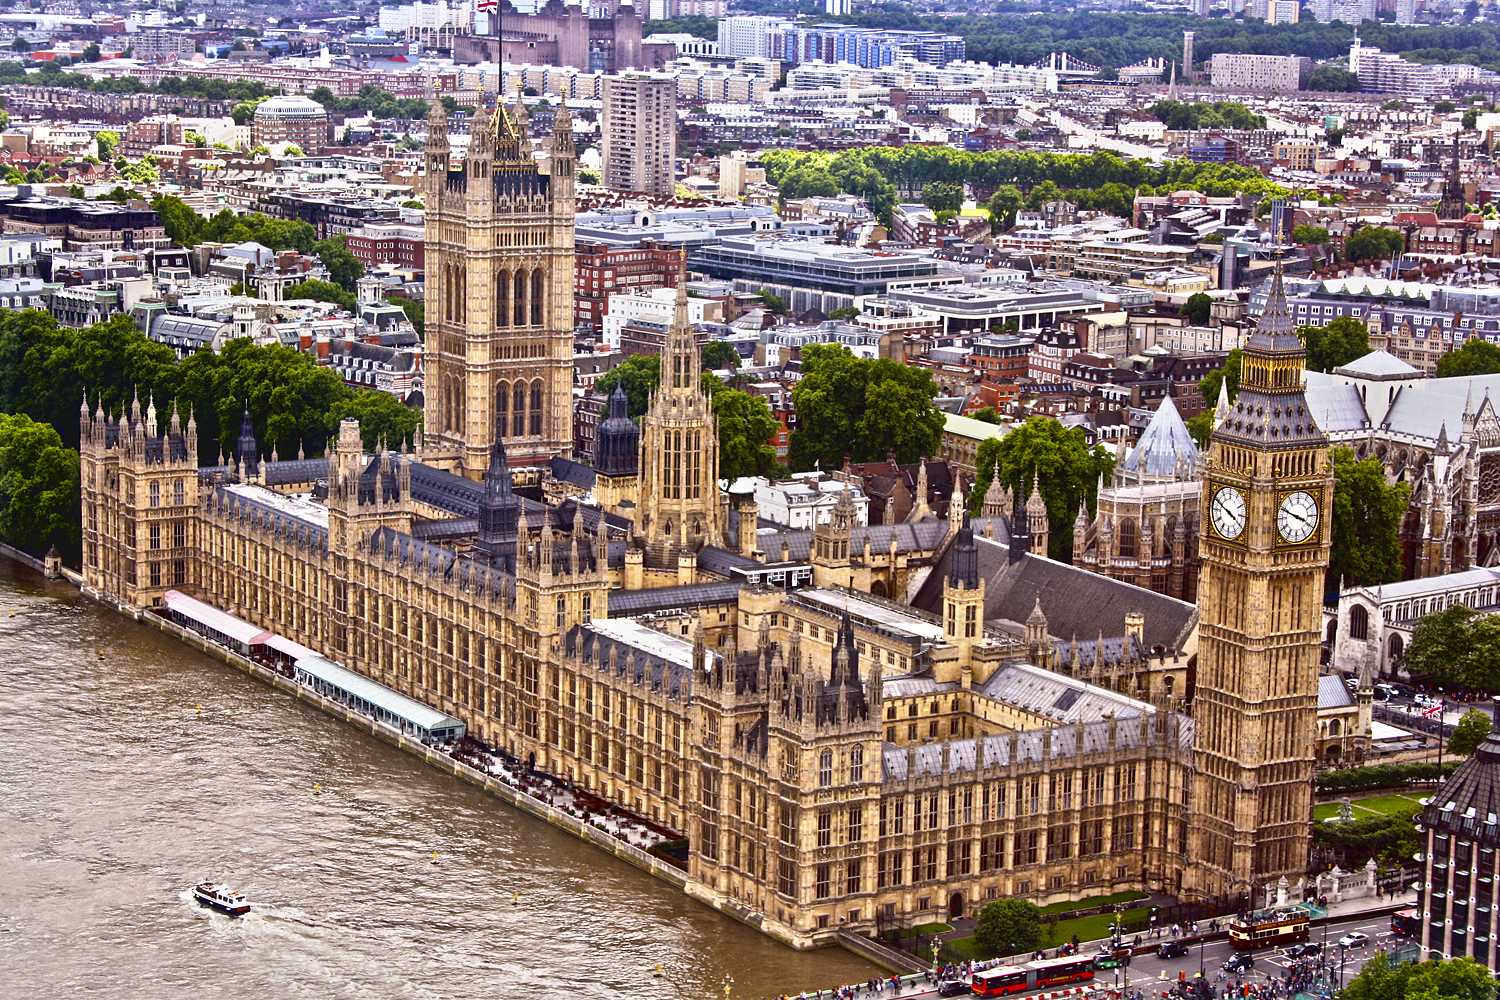 Вестминстер лондон. Вестминстерский дворец Лондон. Здание парламента - Вестминстерский дворец. Достопримечательности Лондона Вестминстерский дворец. Вестминстерский парламент Великобритании.